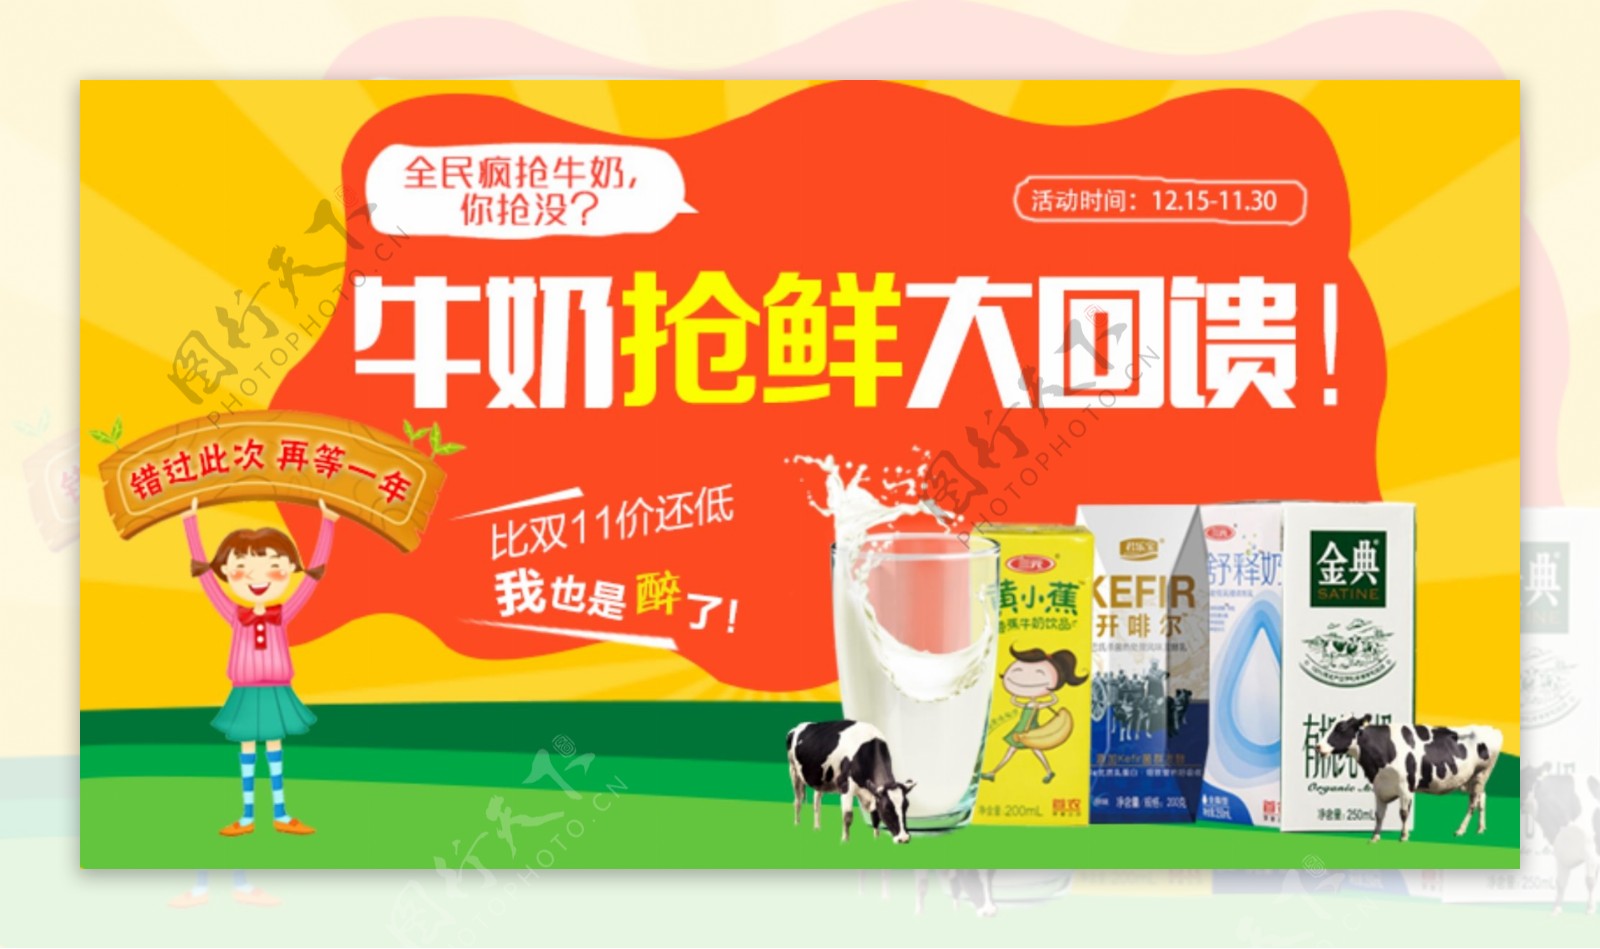 牛奶促销海报淘宝素材免费下载